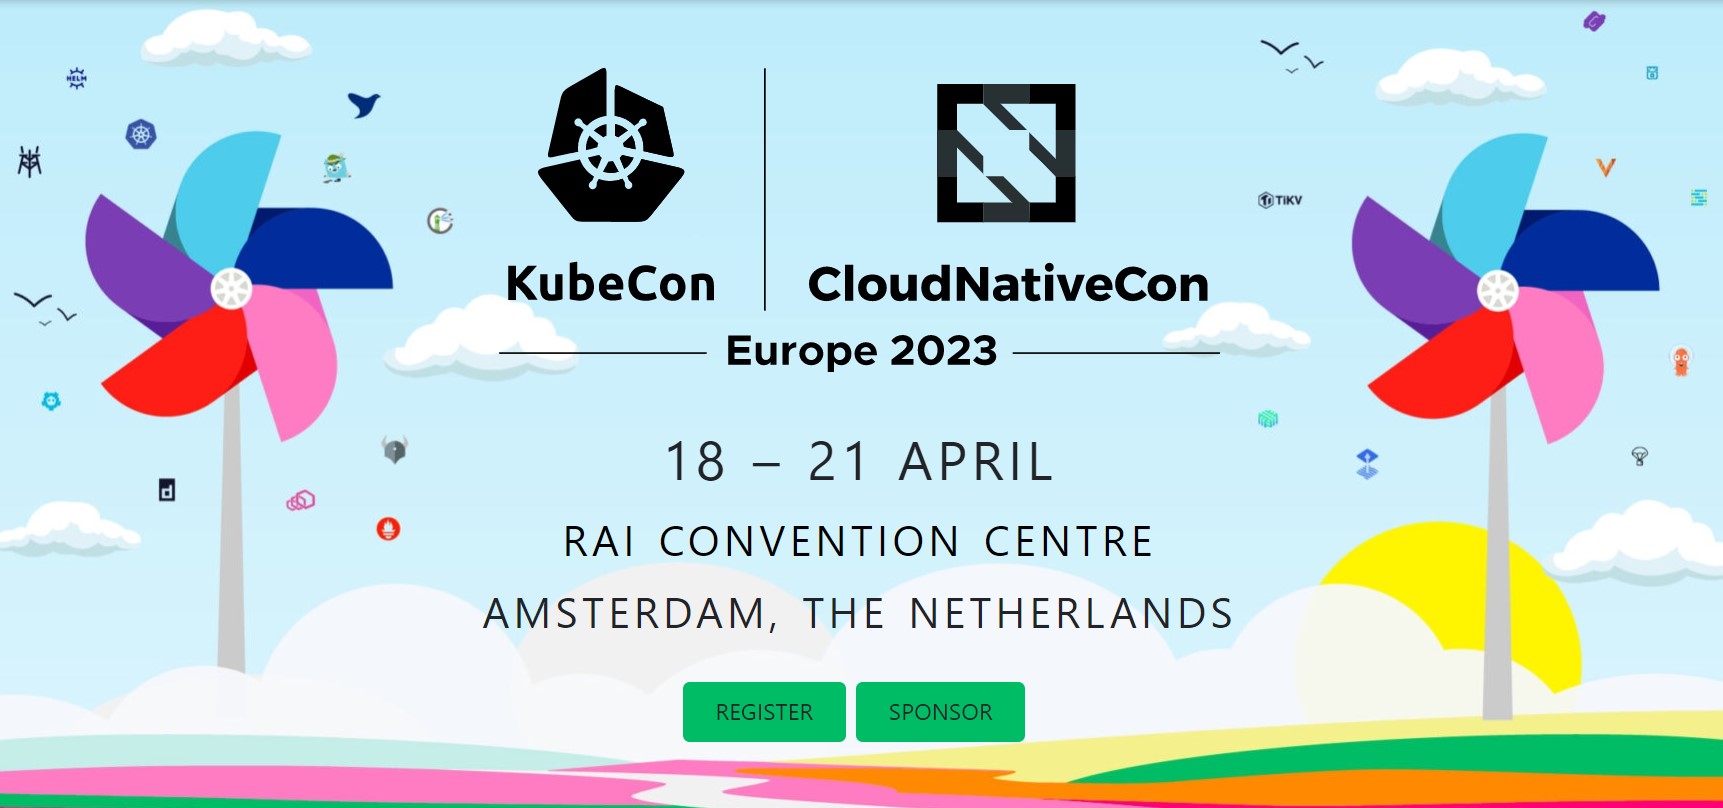 Kubecon Cloudnativecon Europe 2023